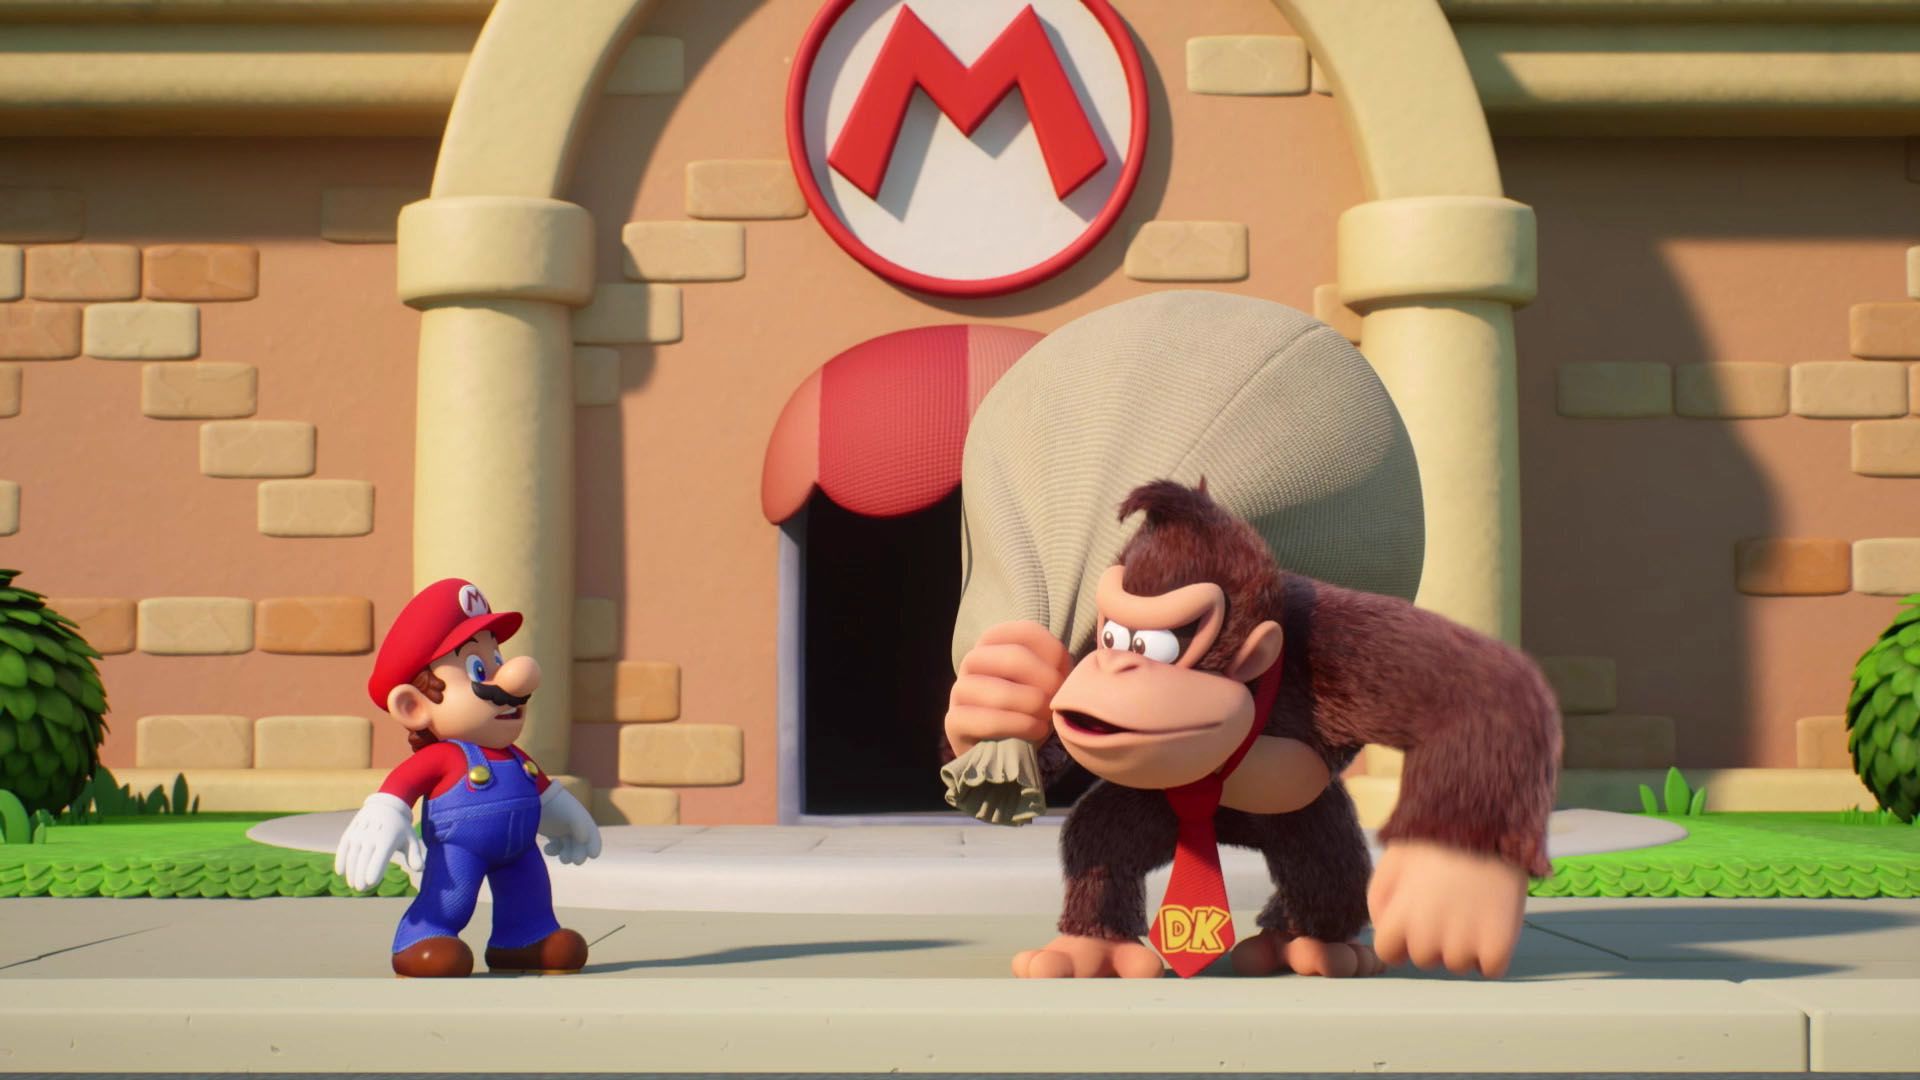 Марио задумчиво смотрит на Donkey Kong, у которого на плече висит большой мешок, в то время как он стоит перед зданием с логотипом Марио. Искренне говоря, это выглядит так, будто Donkey Kong только что ограбил Марио. Это скриншот из игры Mario против Donkey Kong.